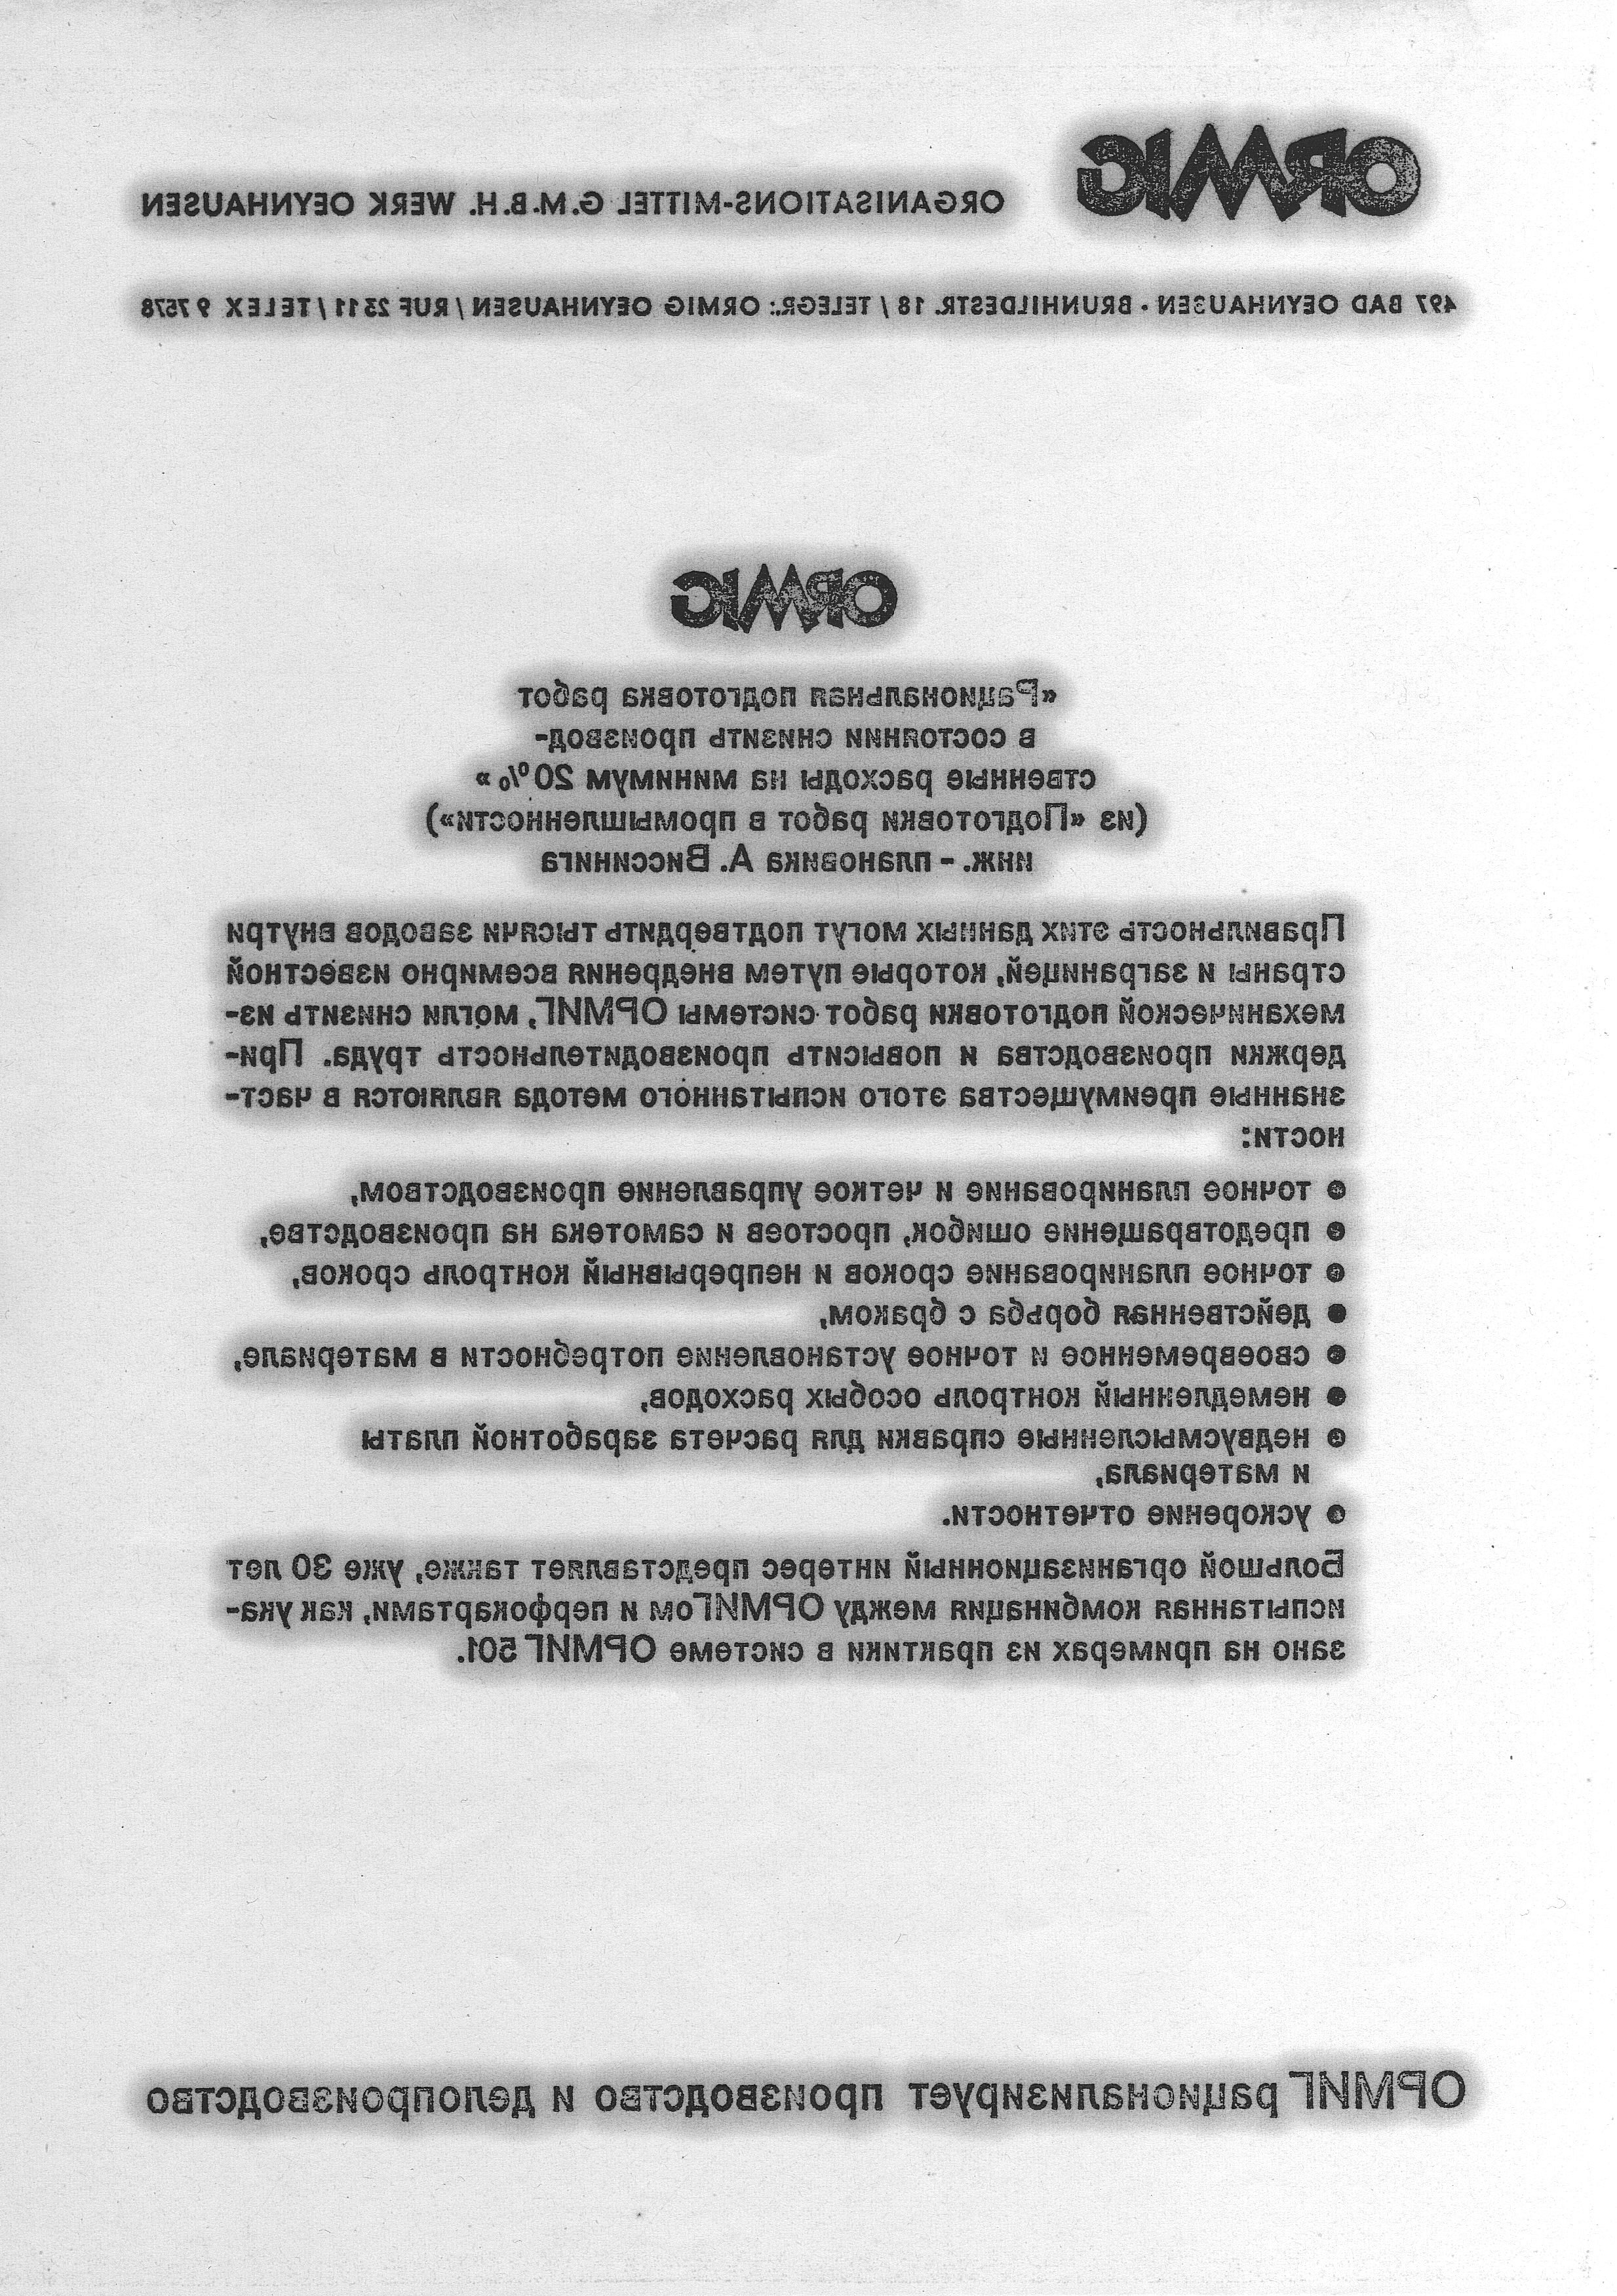 Beschriebenes ORMIG-Umdruckoriginal, das zu einem Werbezweck bei einer Messe in Moskau 1966 verwendet wurde, dankend gestiftet von Horst Berkemeyer